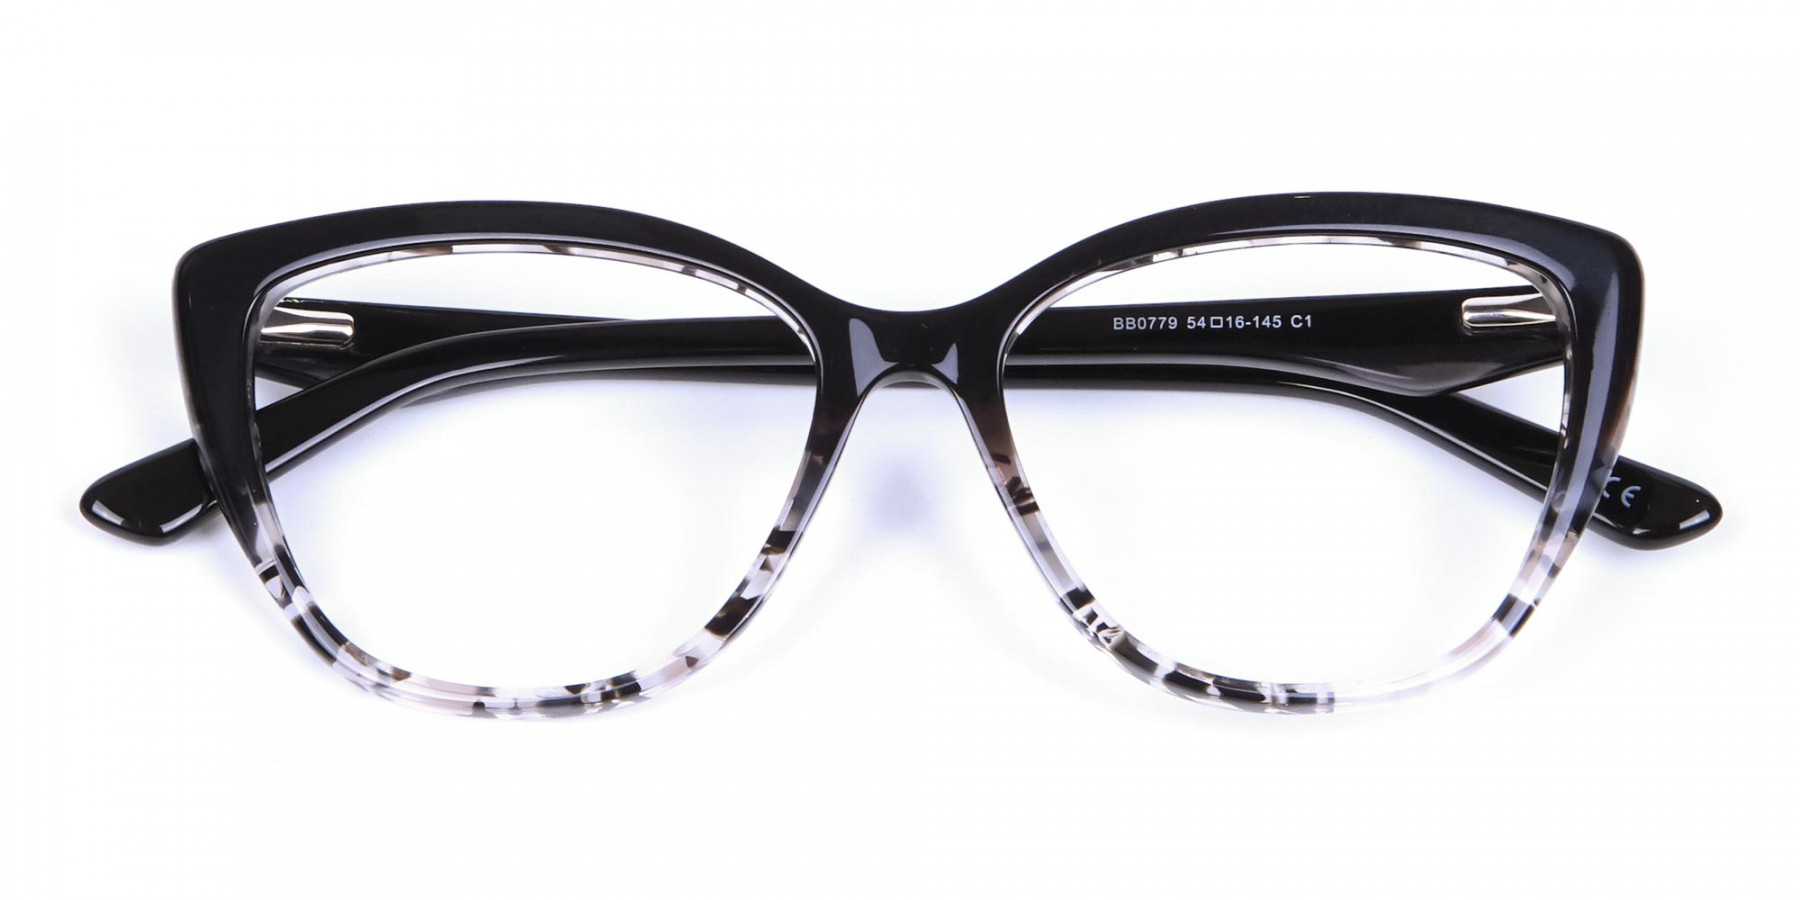 Black Cat Eye Glasses for Women